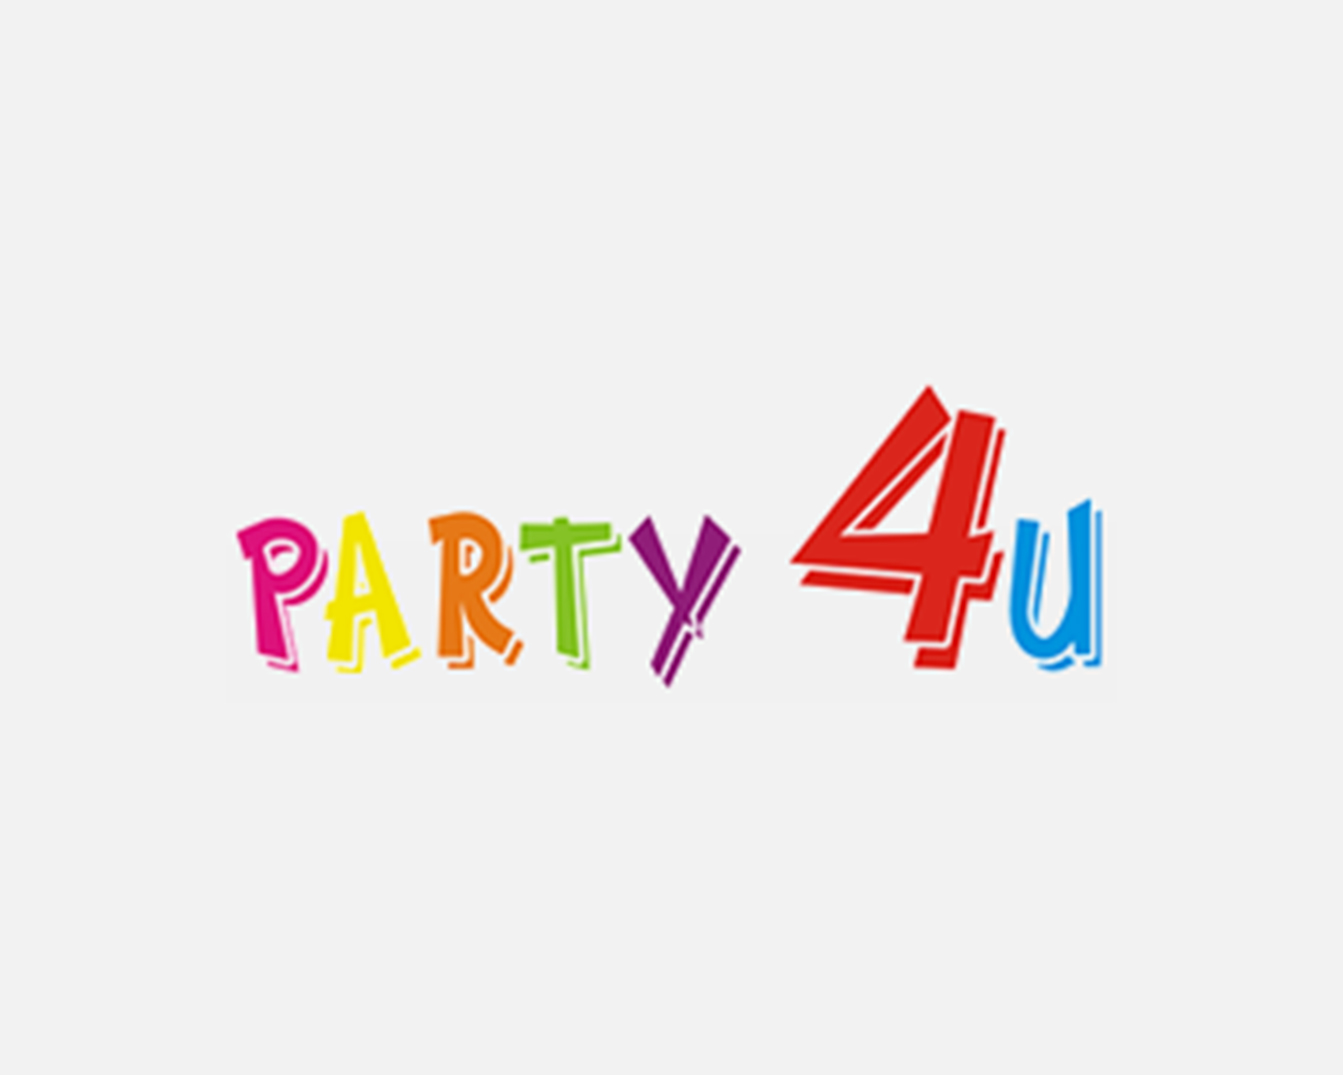 Party 4u